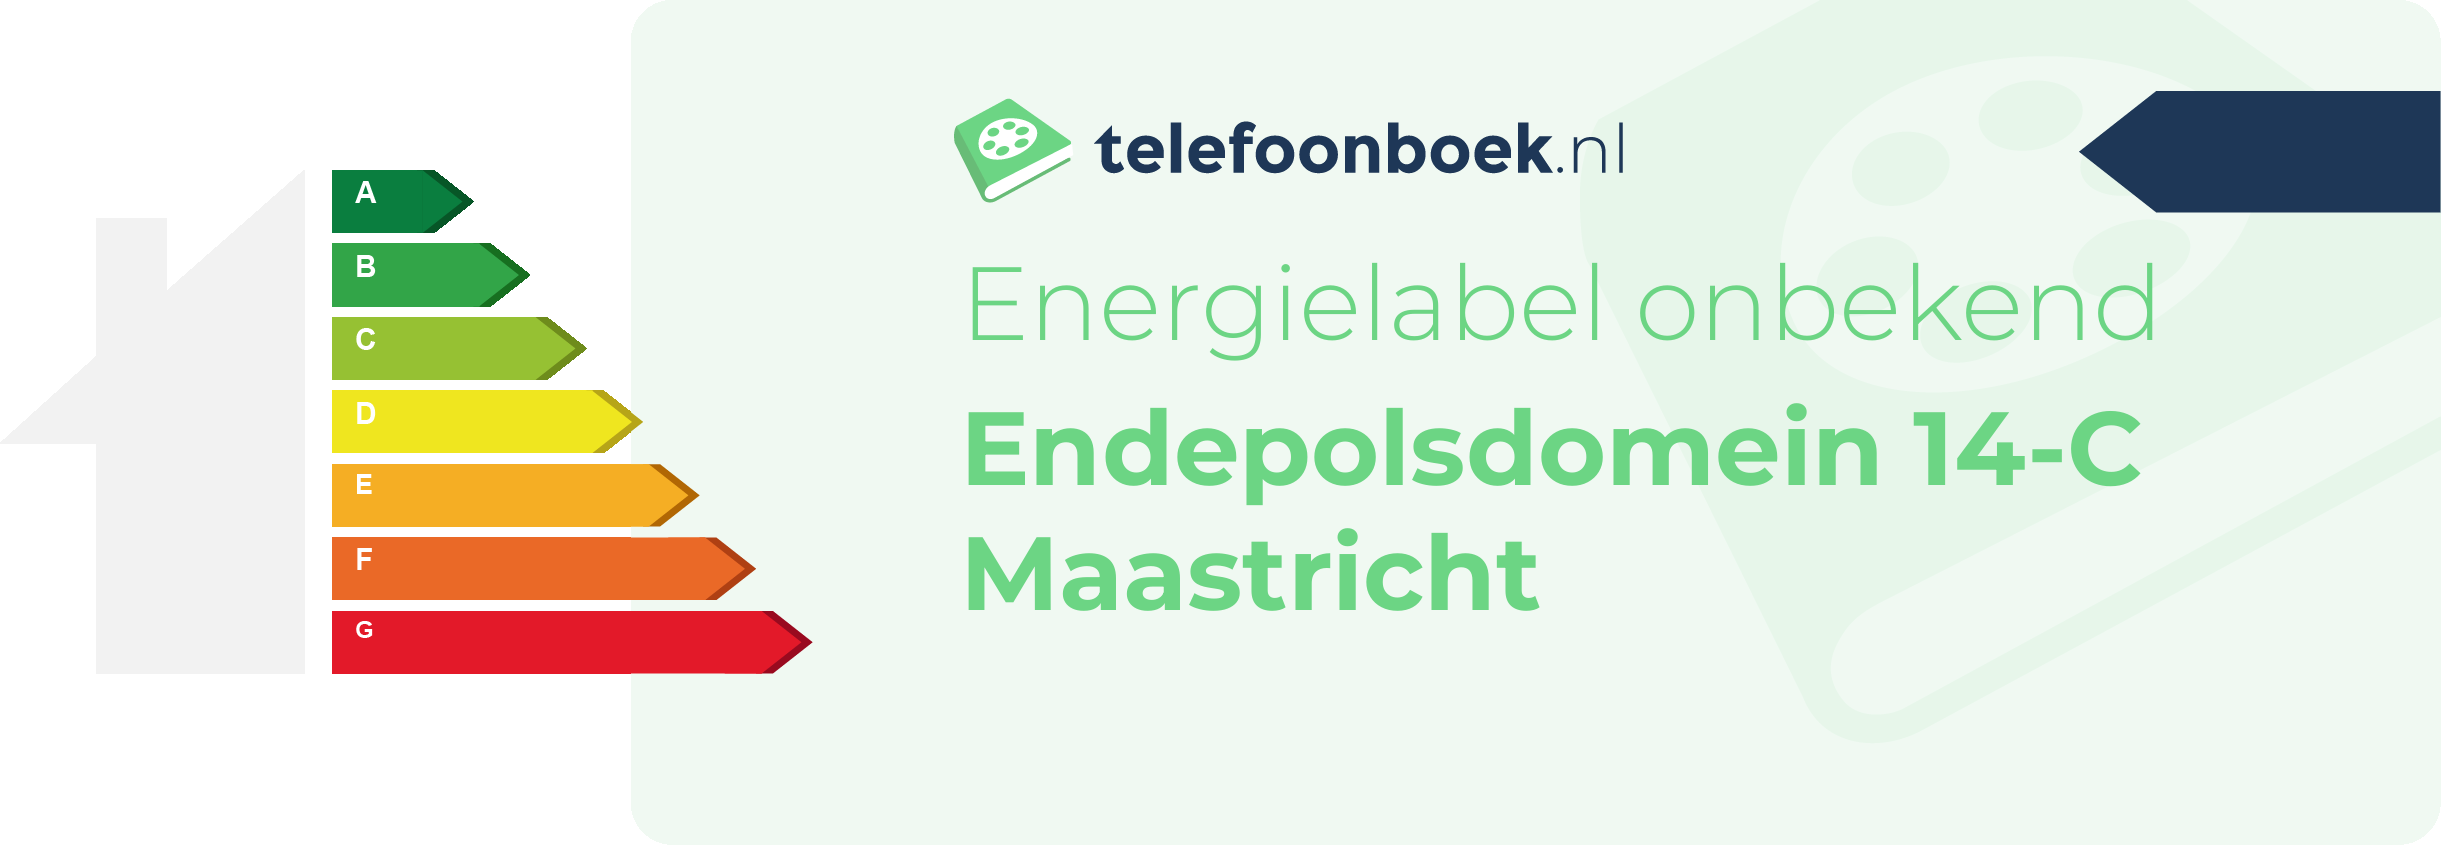 Energielabel Endepolsdomein 14-C Maastricht